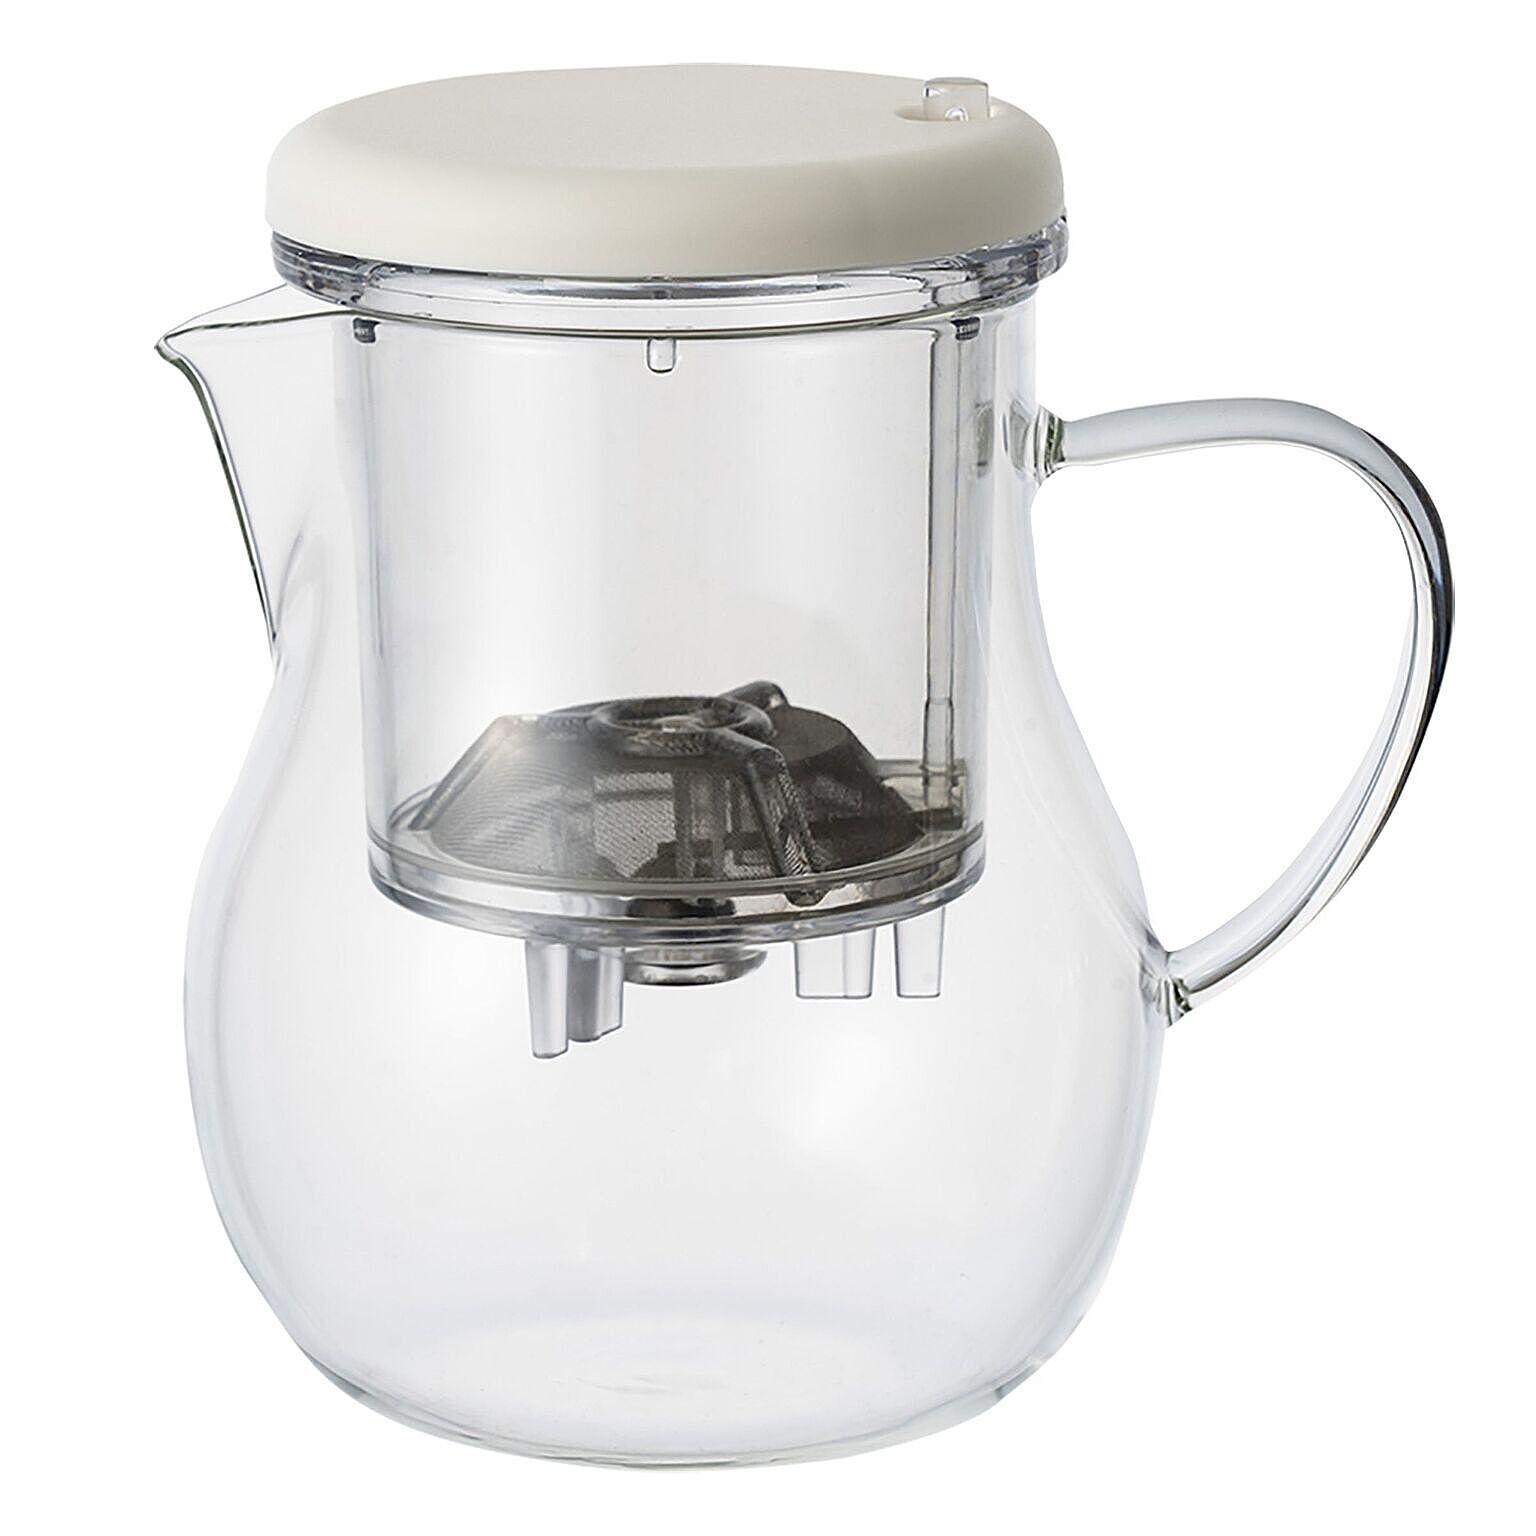 TEAPUSH マックマー ティーポット 耐熱ガラス製 茶こし付き ワンプッシュ抽出 1人～2人用 700ml コンパクト クリア 急須